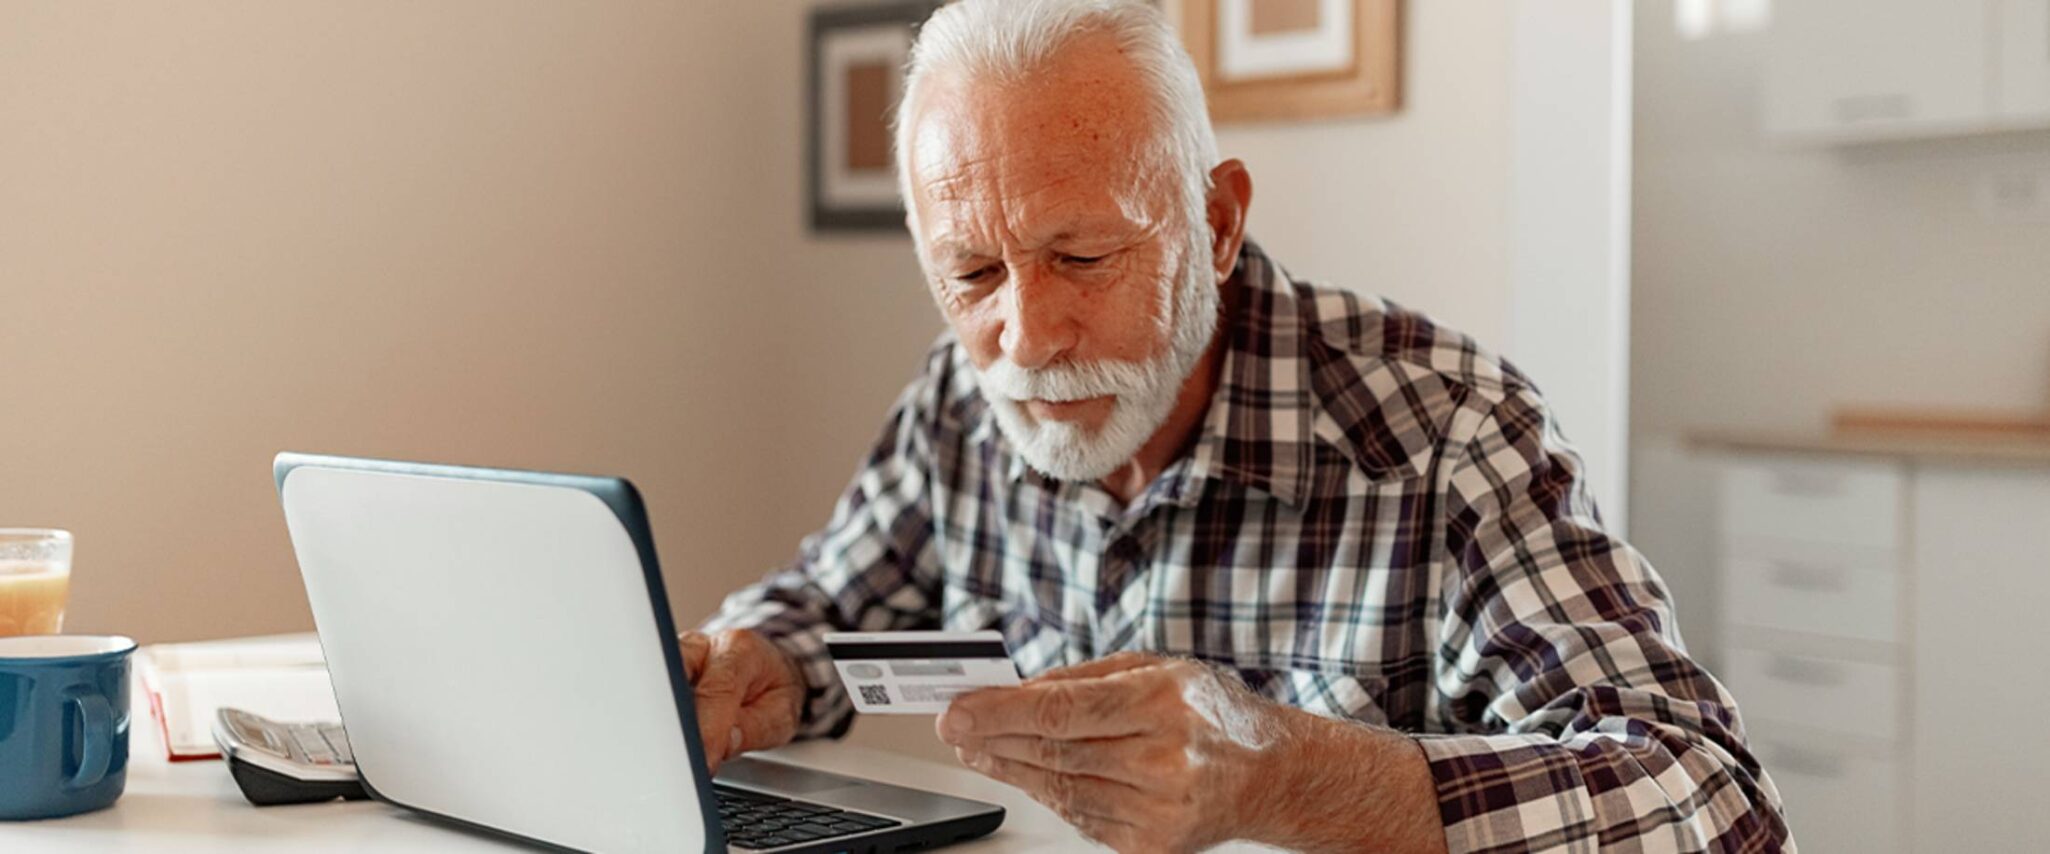 Senior man looking at his credit card